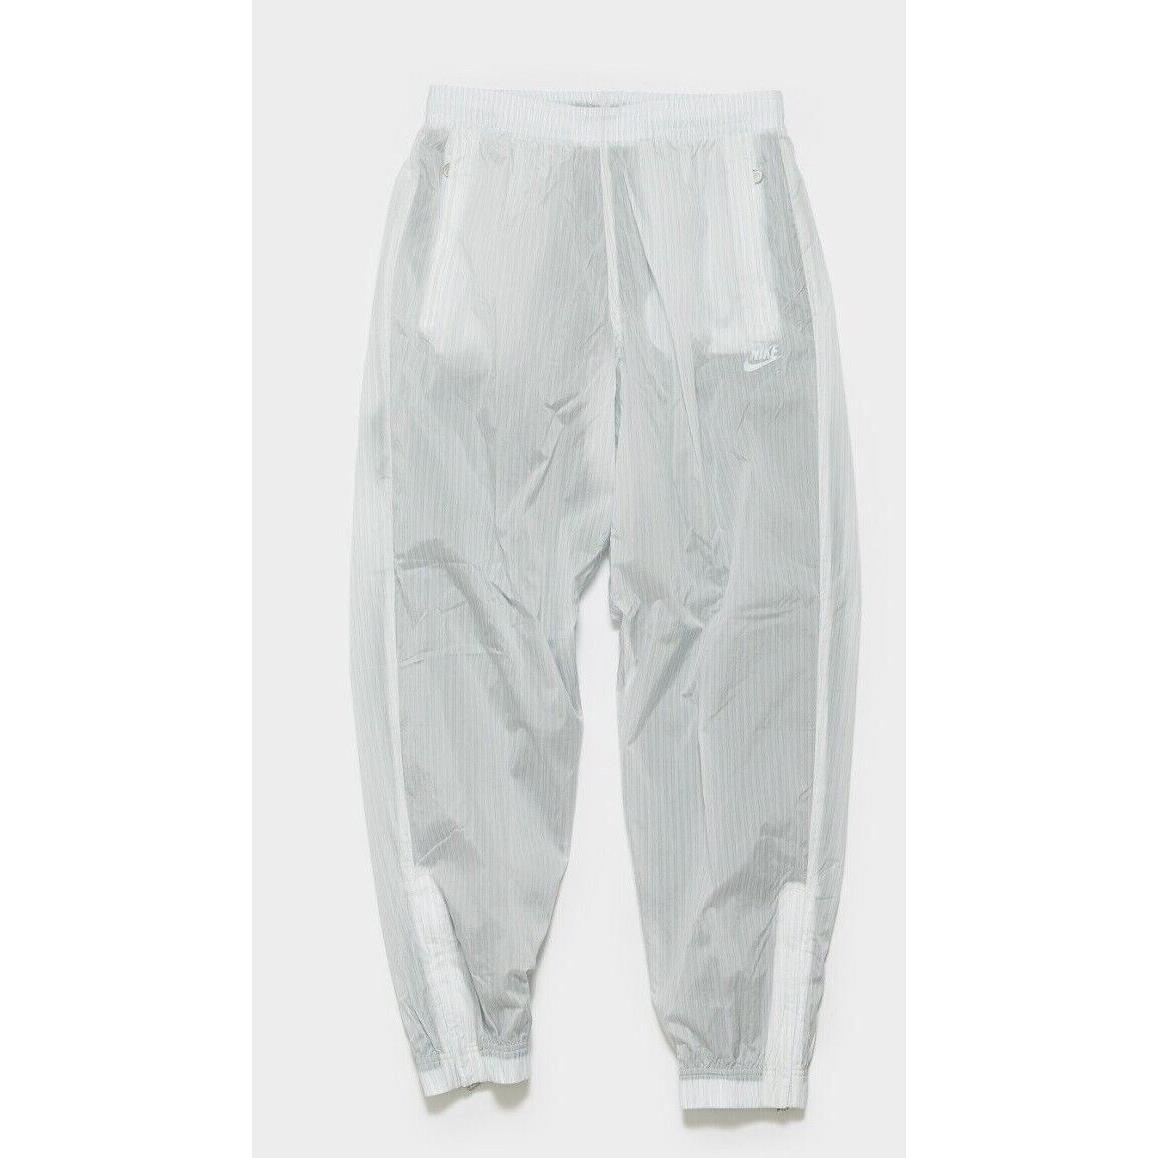 Nike x Kim Jones Track Pants Adult Unisex White Blue Size M L DH6585-100